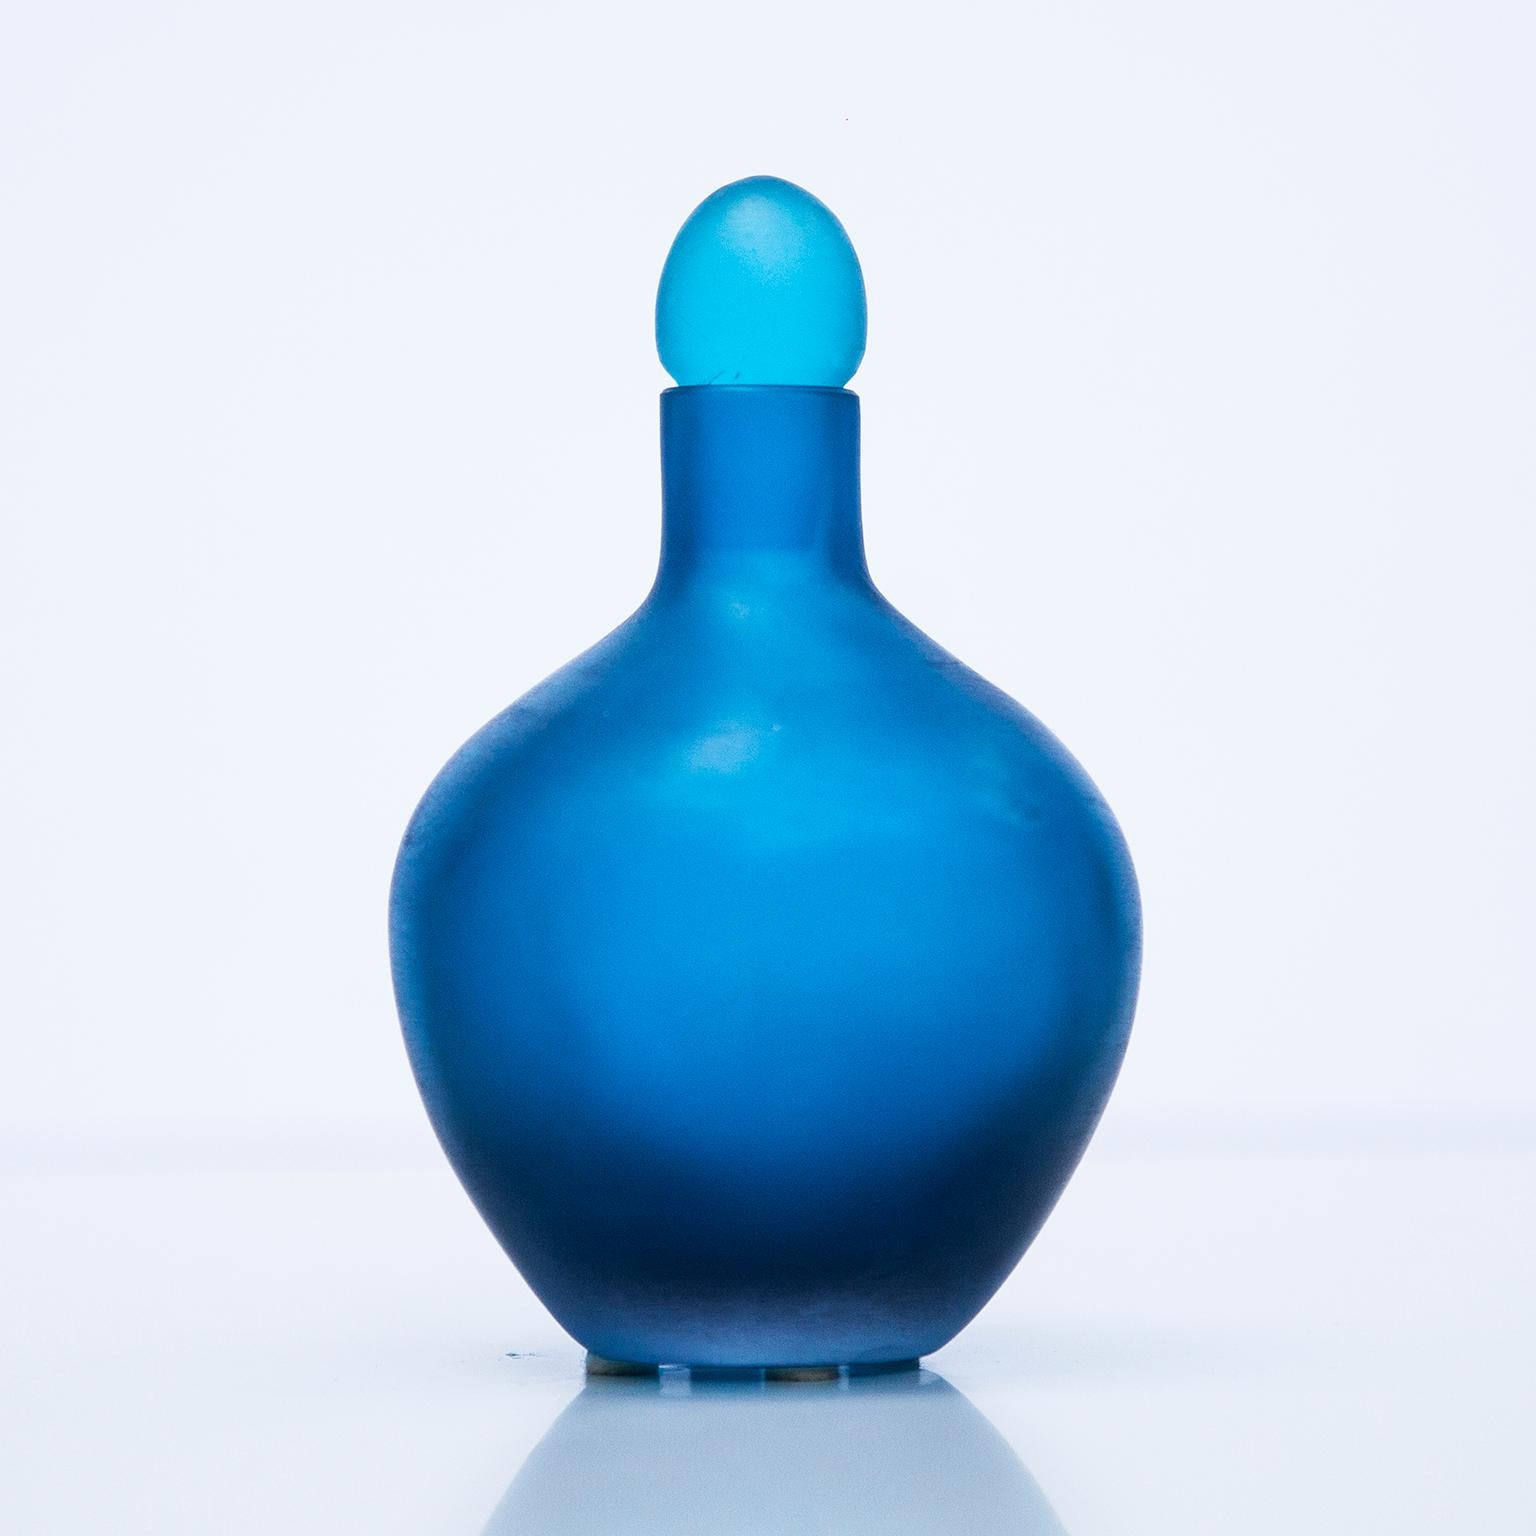 Eleganter Venini-Flakon, entworfen von Paolo Venini im Jahr 1968. Blaues Gussglas mit geritzter Oberfläche in Battuto-Technik, Unterseite mit gravierter Signatur Venini.